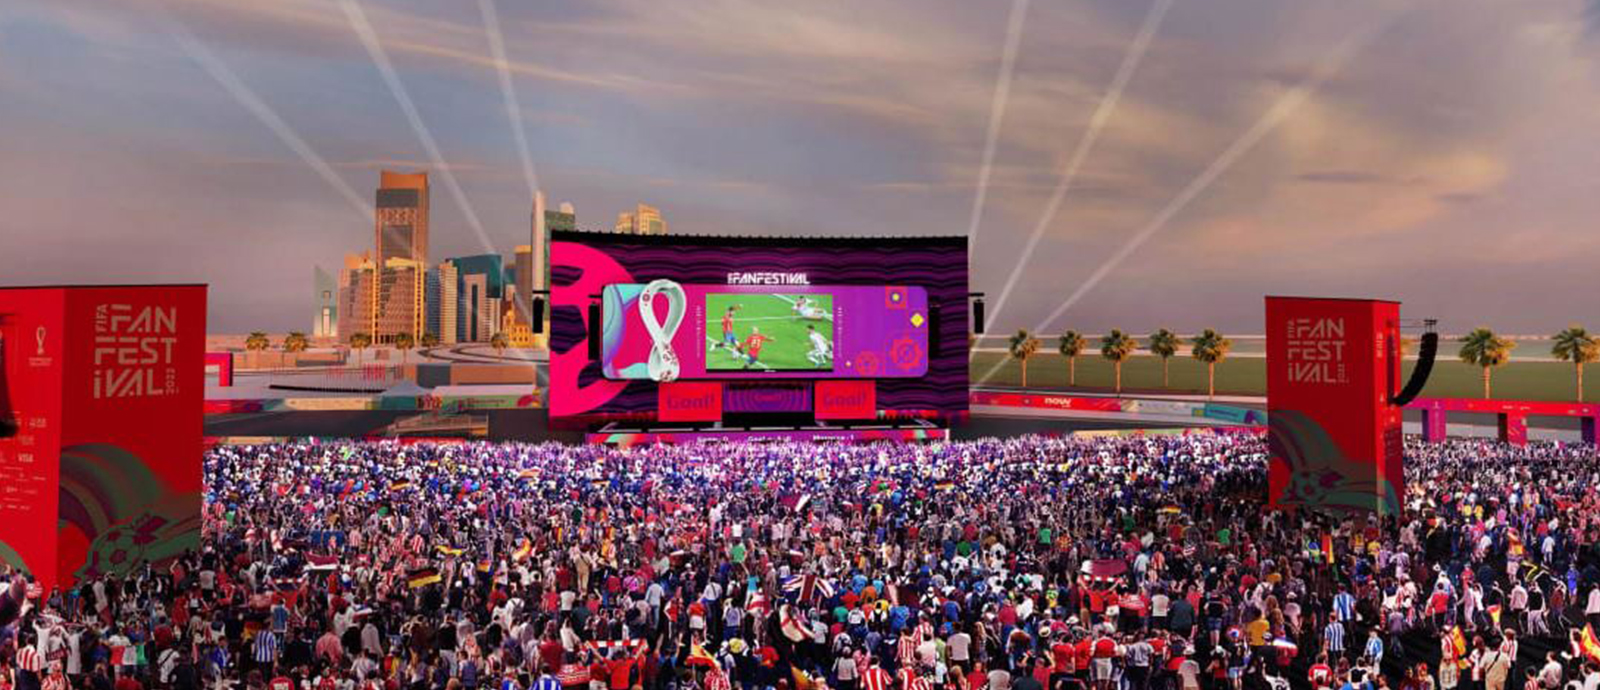 مشيرب قلب الدوحة تكشف عن فعالياتها خلال بطولة كأس العالم FIFA قطر 2022